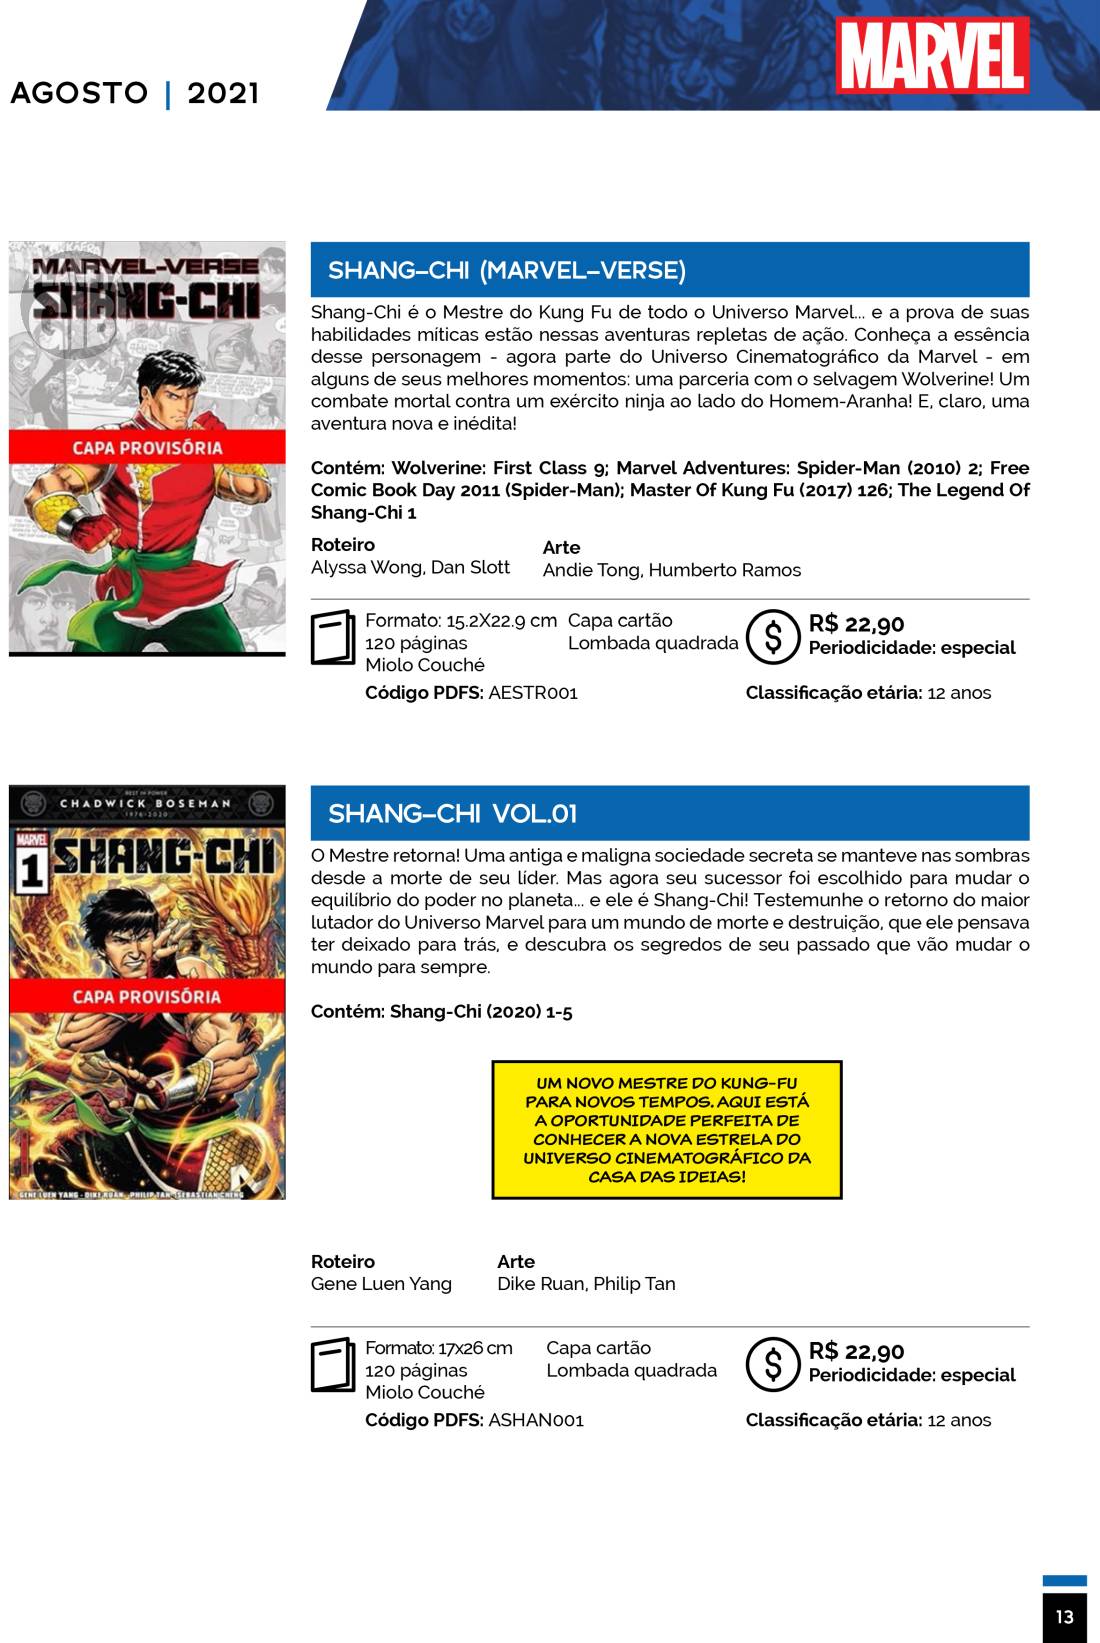 1 - Checklist Marvel/Panini (Julho/2020 - pág.09) - Página 9 Catalogo-Julho-Agosto-13